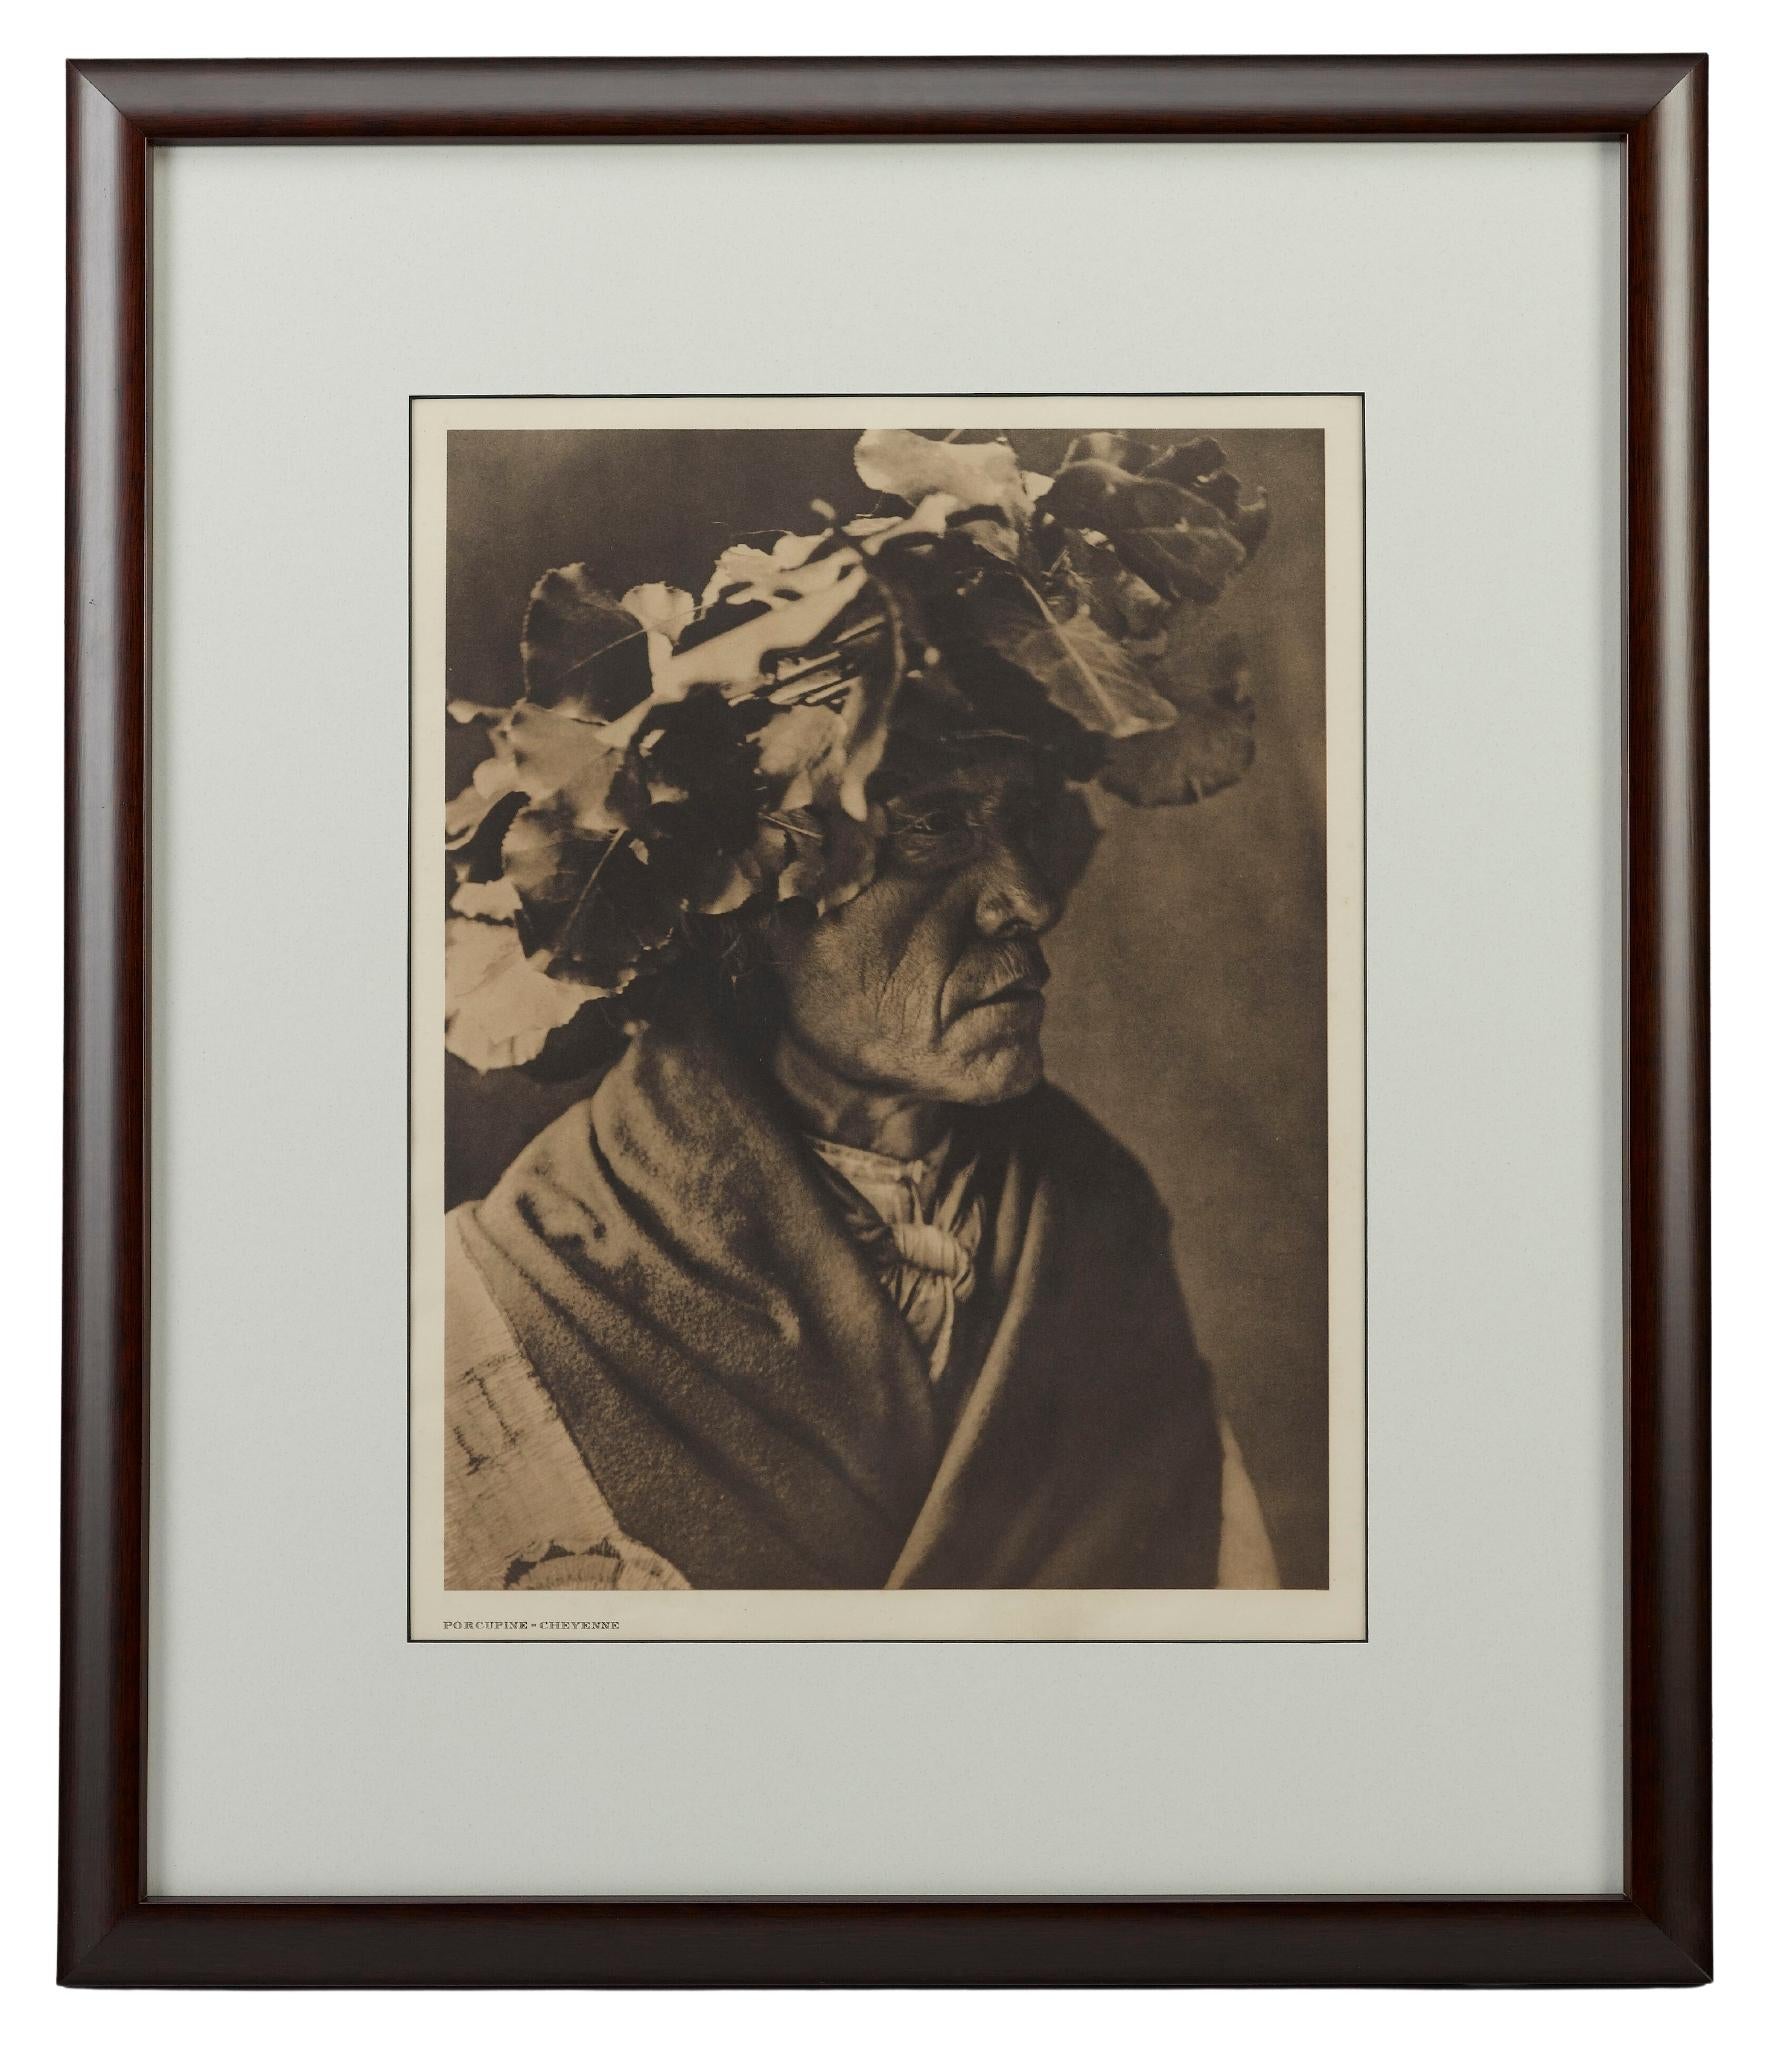 Américain Porcupine - Cheyenne d'Edward S. Curtis, 1911 en vente